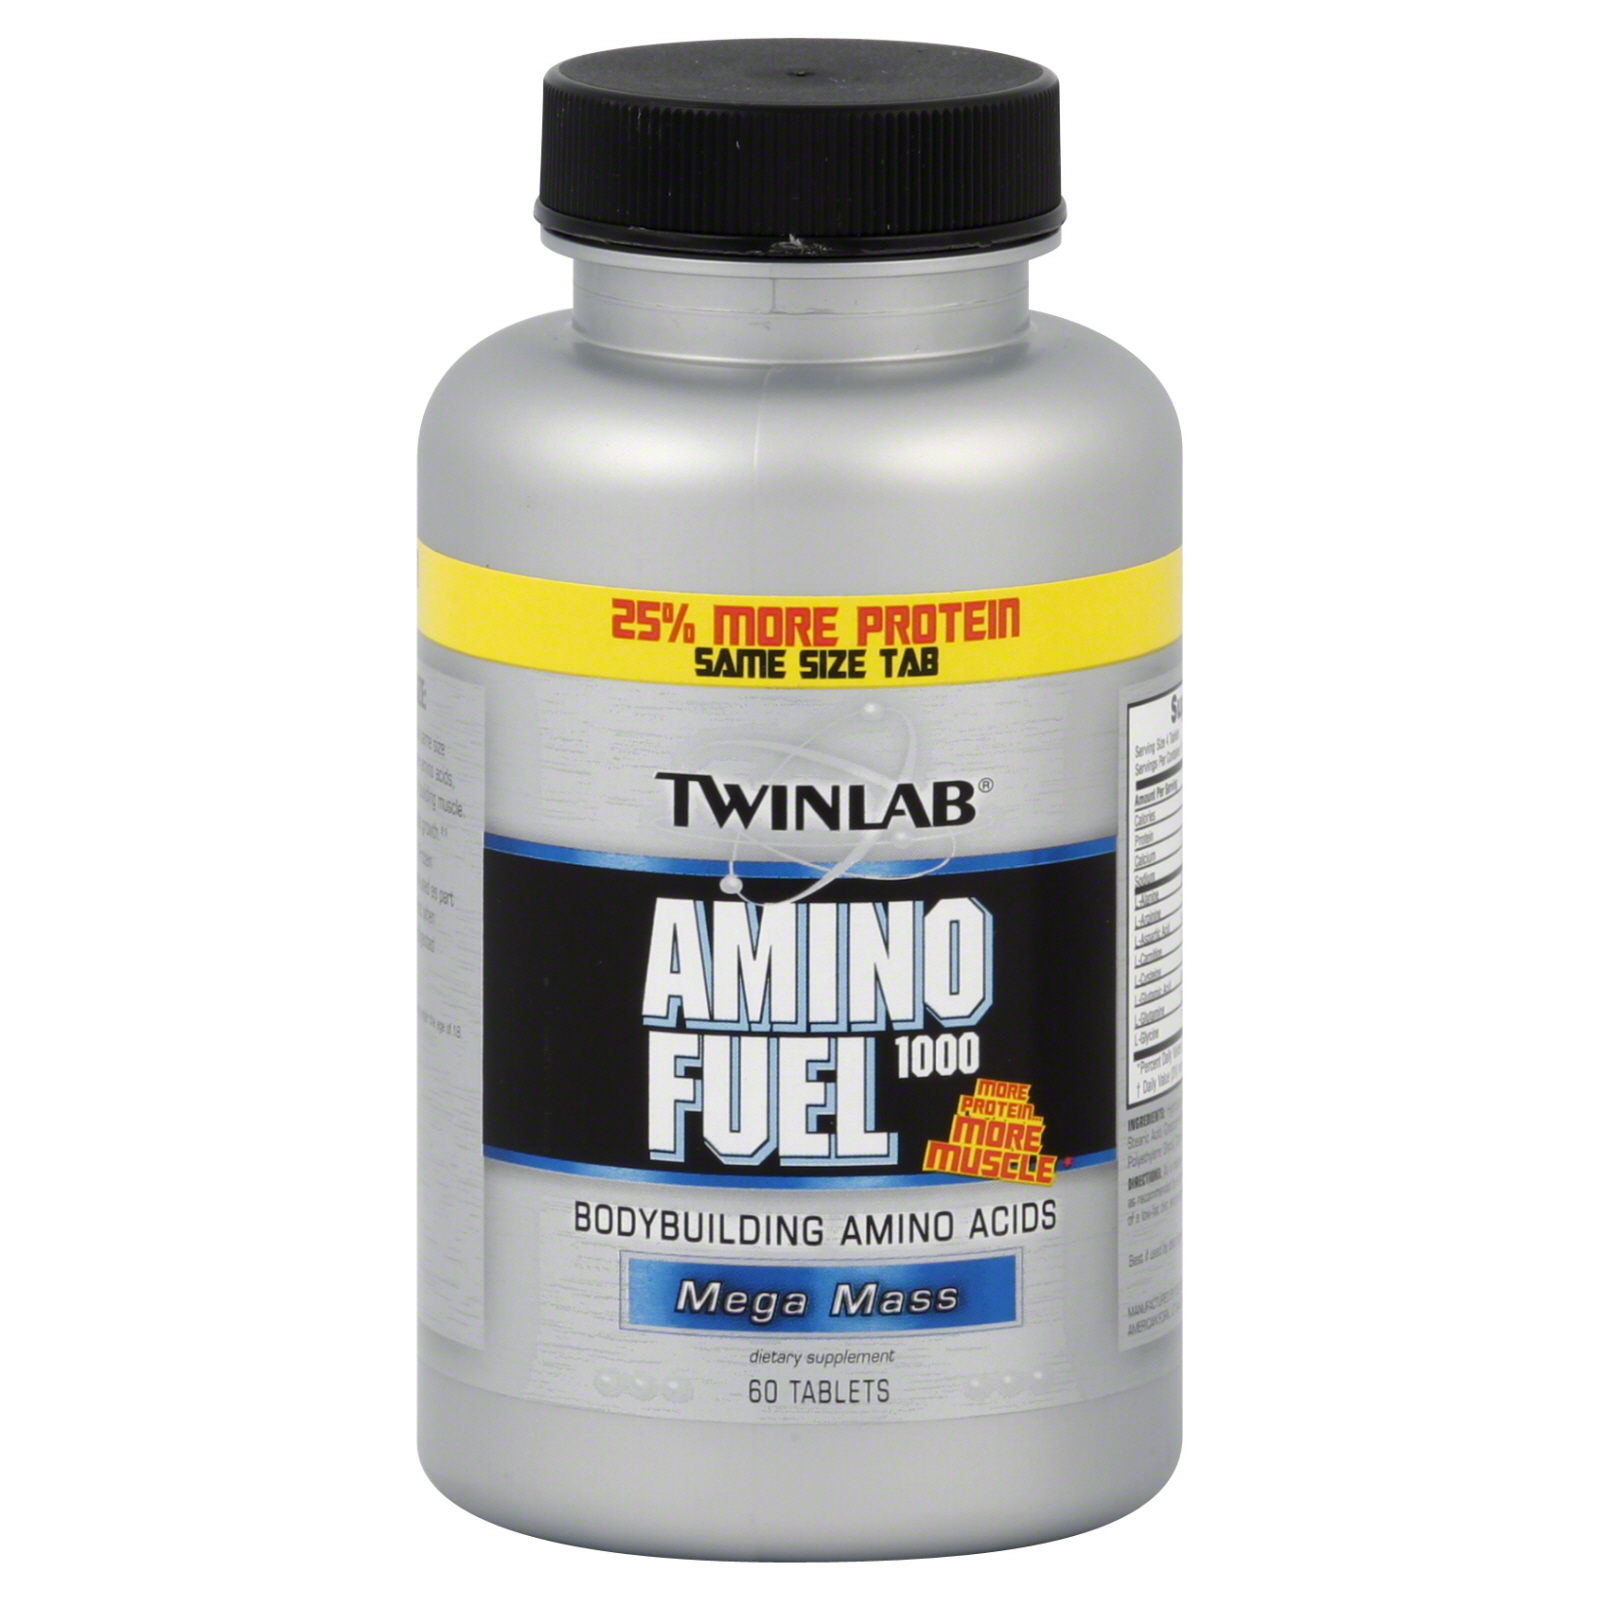 TwinLab Amino Fuel 1000, 60 tablets